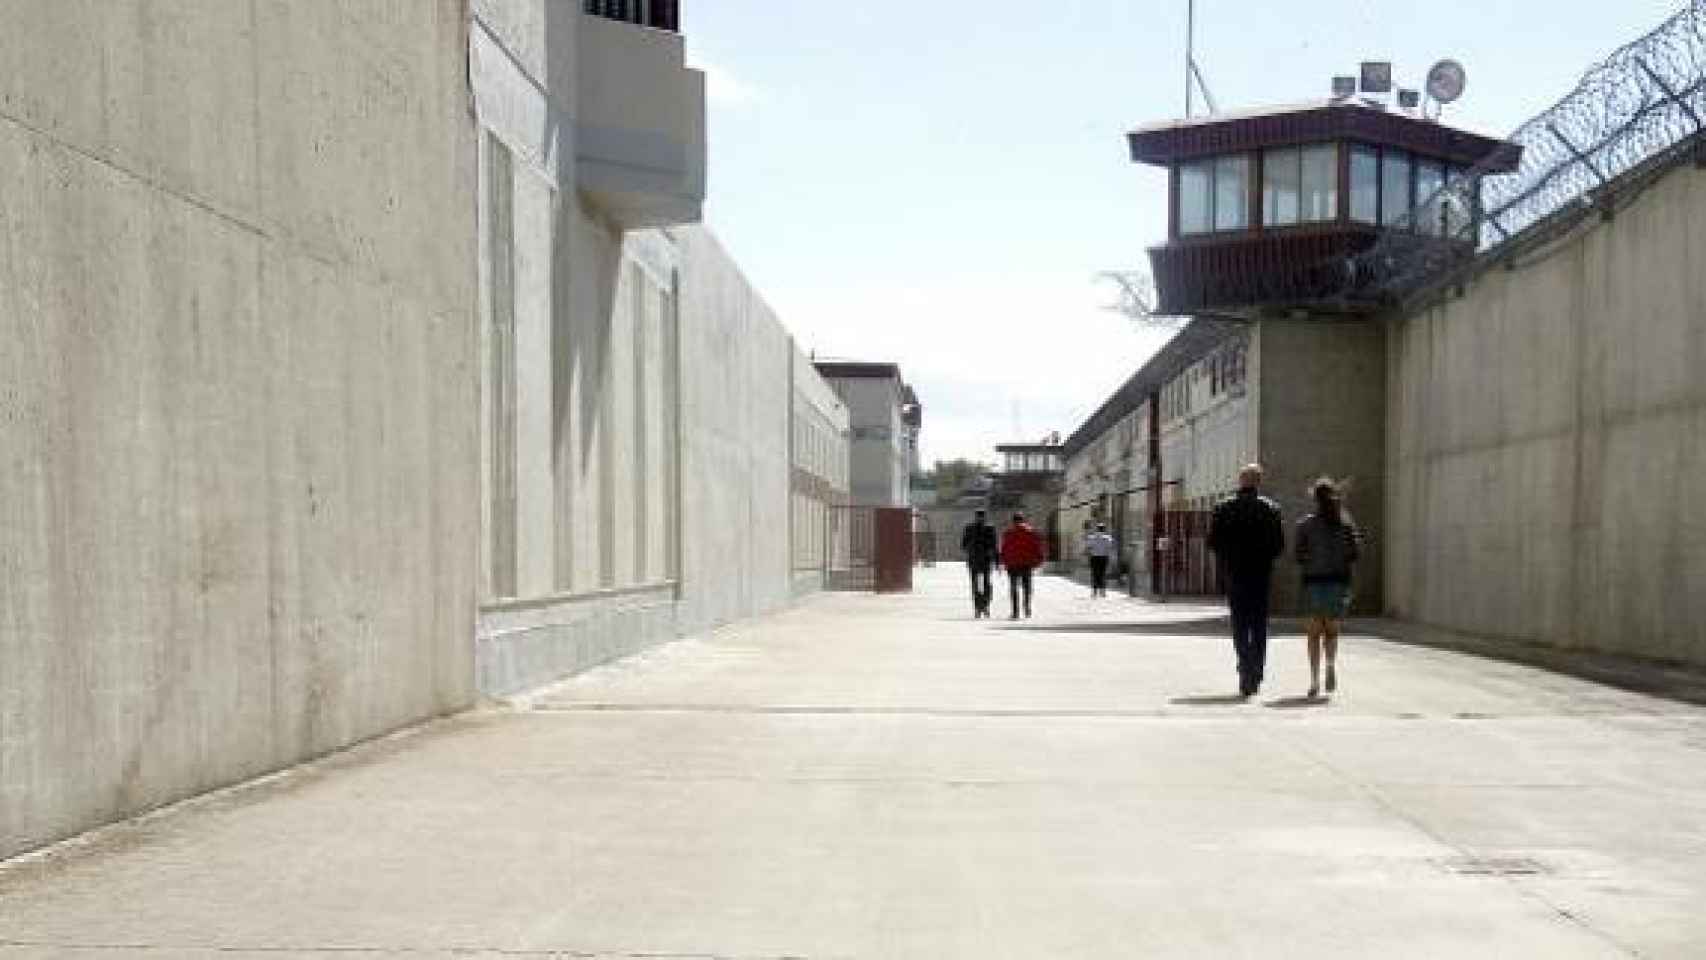 La cárcel de Villanubla (Valladolid), donde ha ingresado el hombre. Foto: EFE.